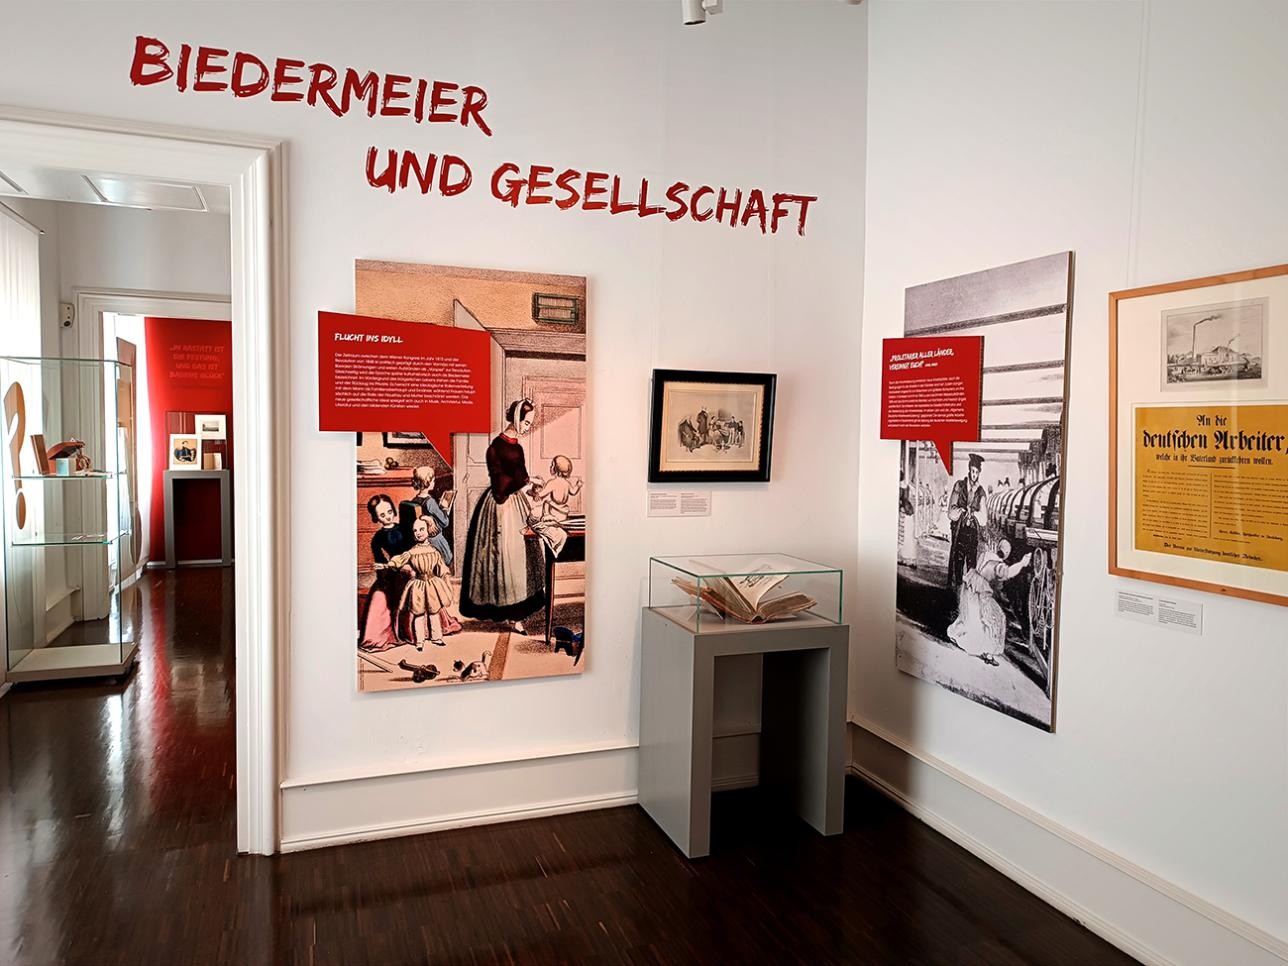 Salle d'exposition avec photos et informations sur l'exposition temporaire : "Für die Freiheit ! Rastatt und die Revolution 1848/49" au musée municipal de Rastatt